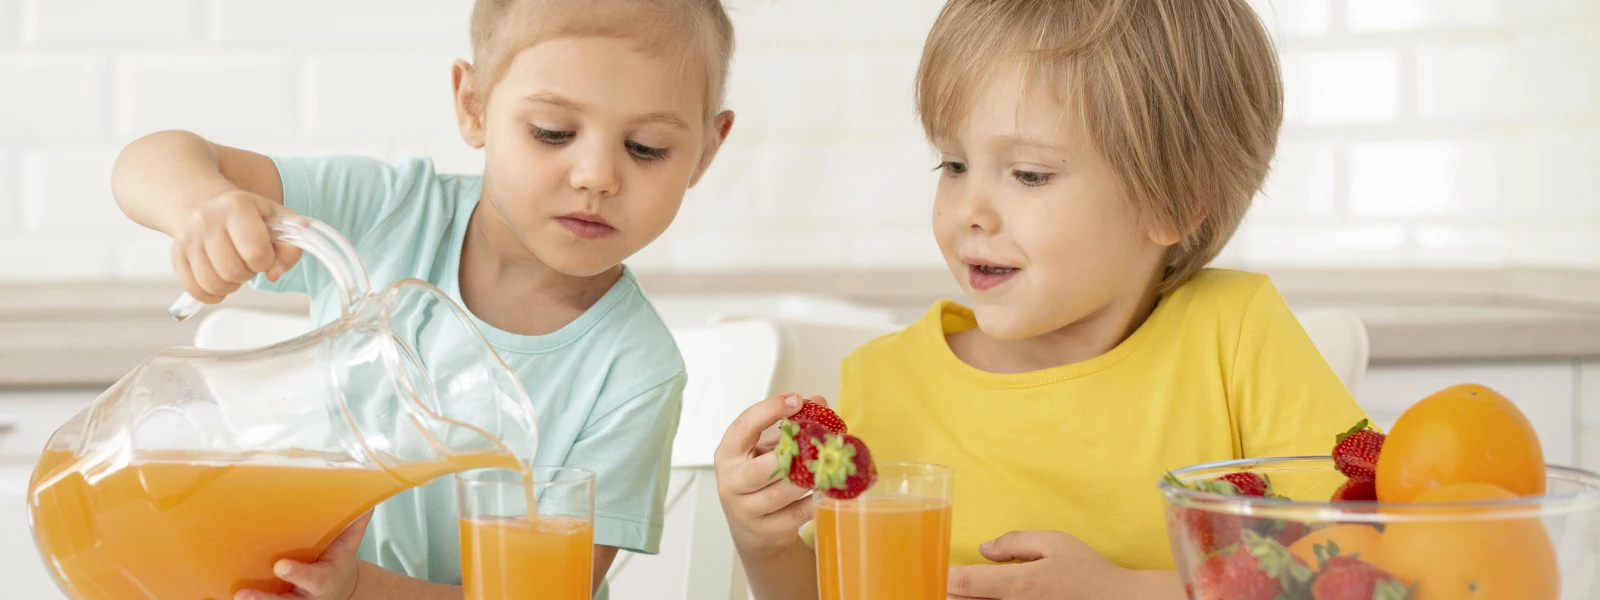 Çocuklar İçin Vitaminlerin Fiziksel ve Zihinsel Gelişimdeki Önemi Nedir?